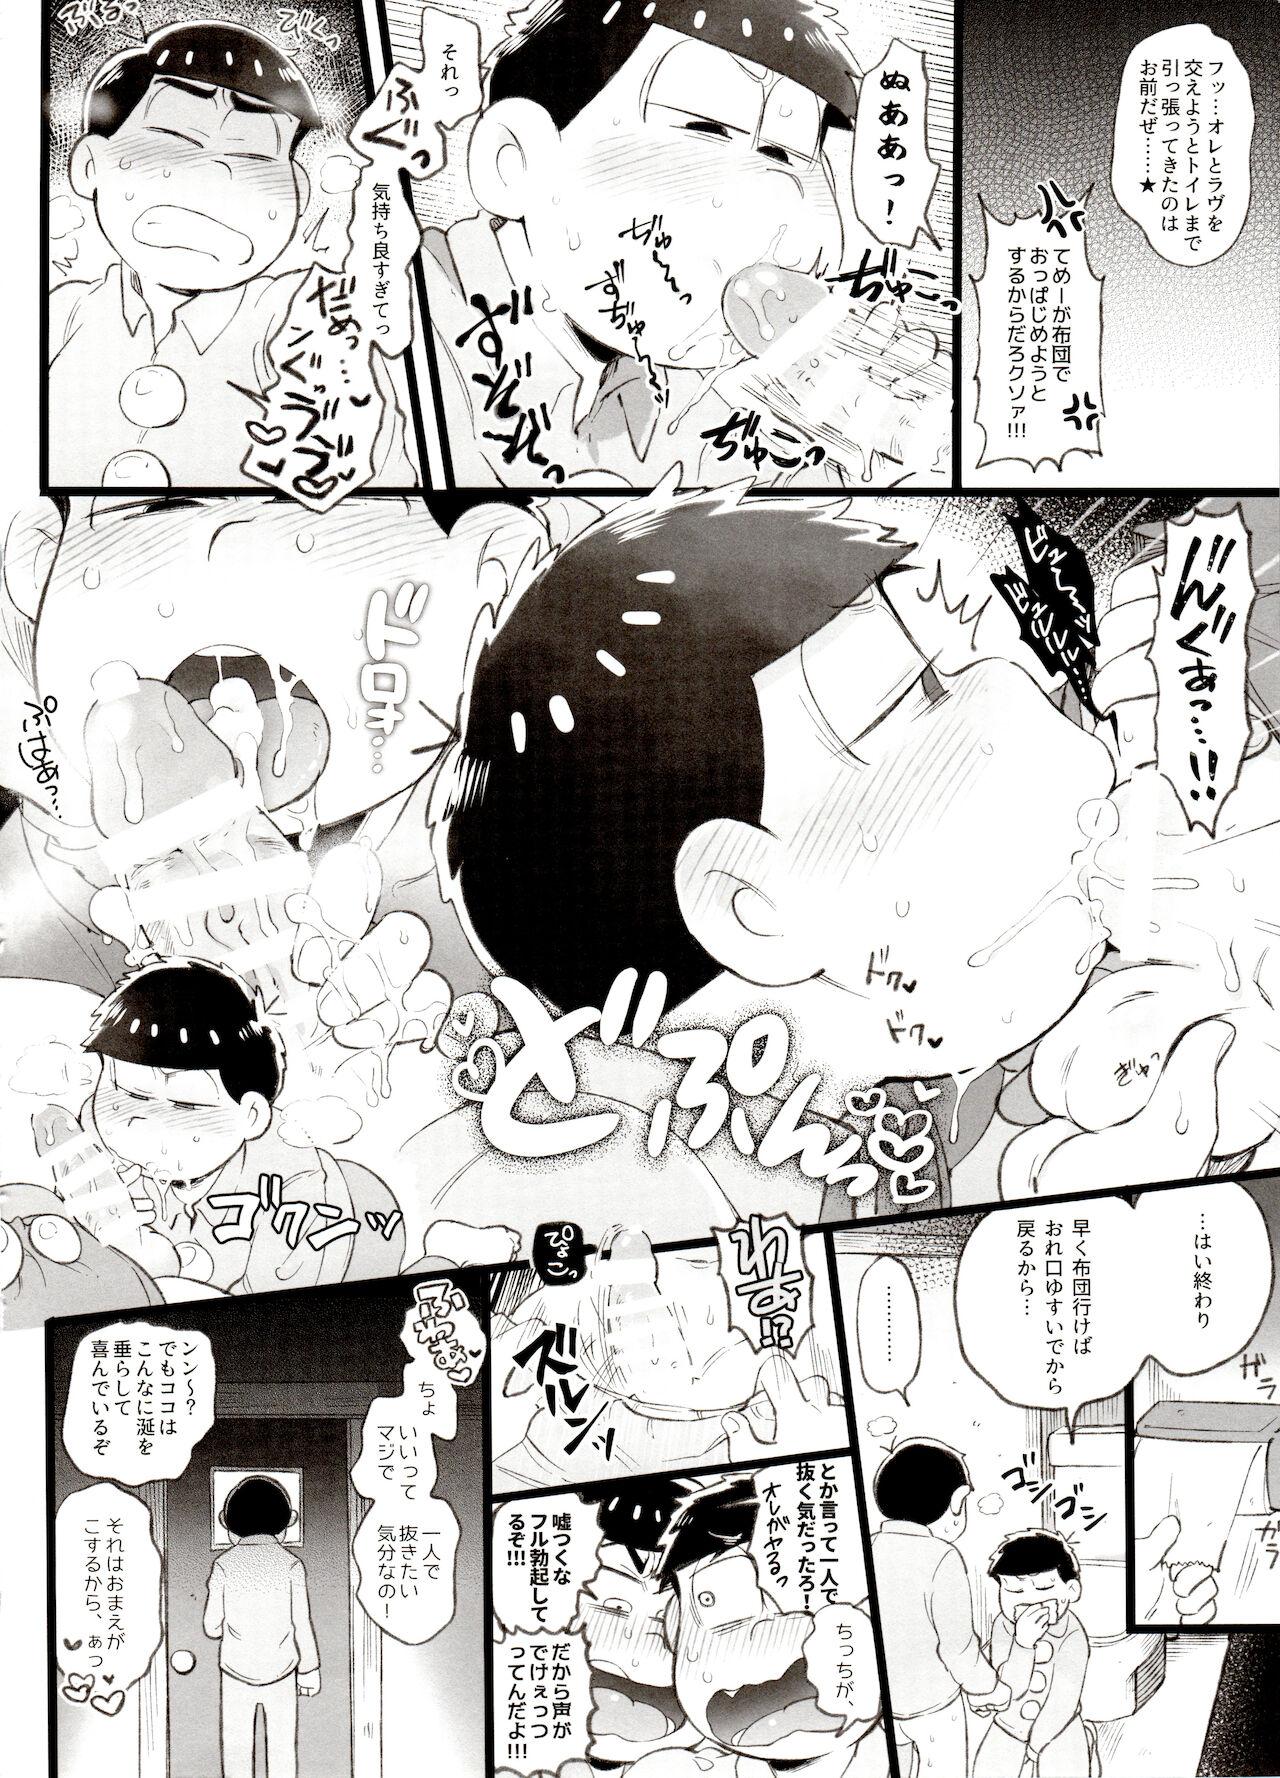 Hymen Kahou 10-ji Yon no Omake Hon + Andante no Koufukuron Gojitsu Manga - Osomatsu san Step Brother - Page 3